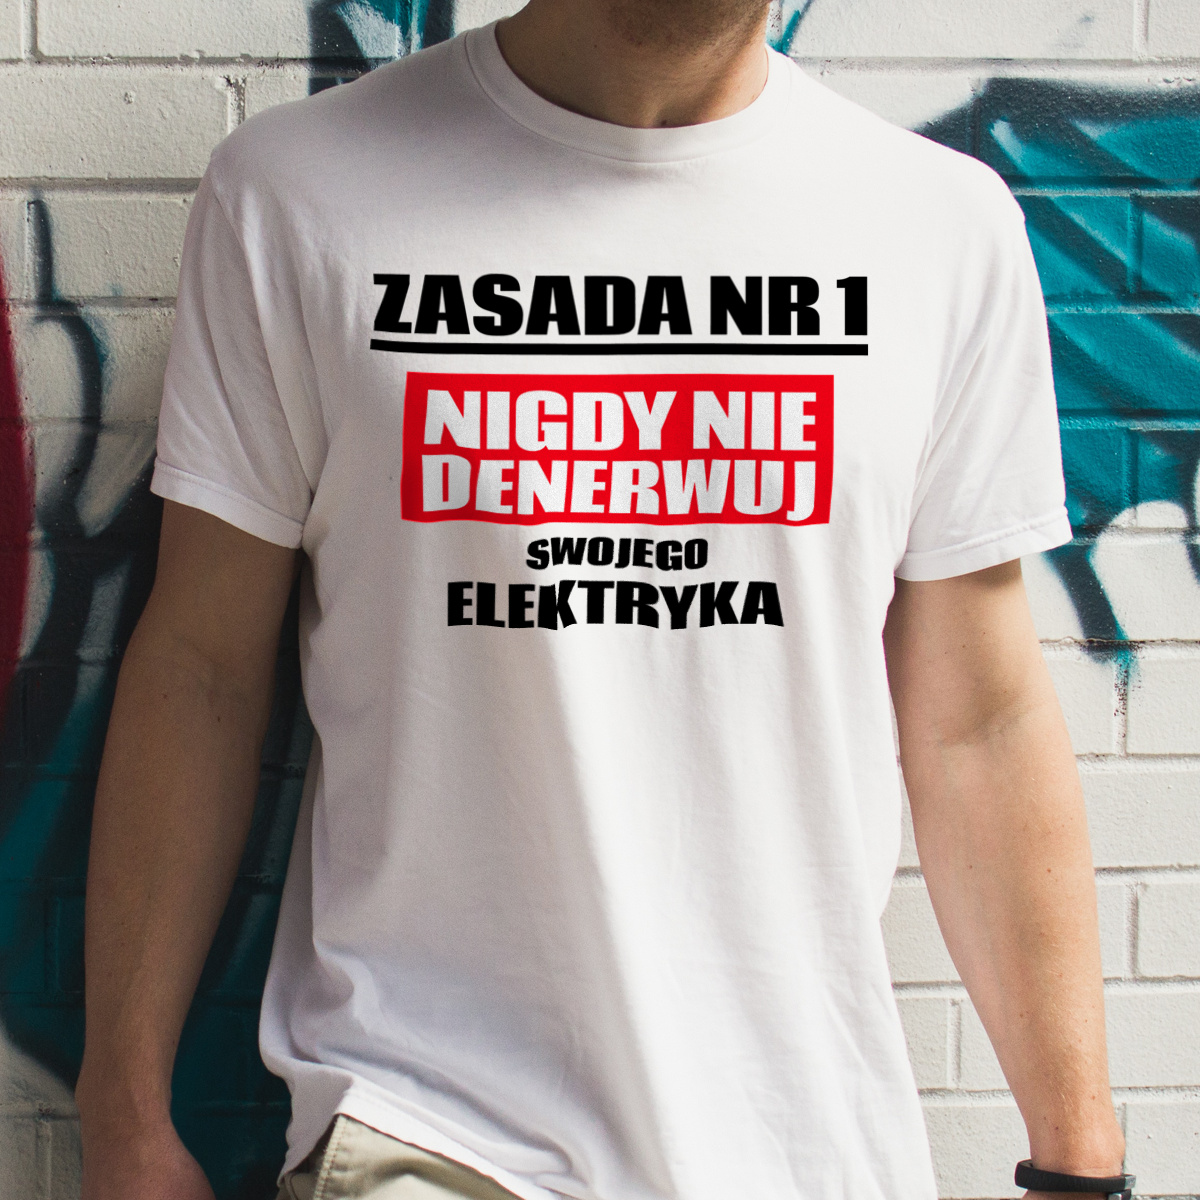 Zasada Nr 1 - Nigdy Nie Denerwuj Swojego Elektryka - Męska Koszulka Biała